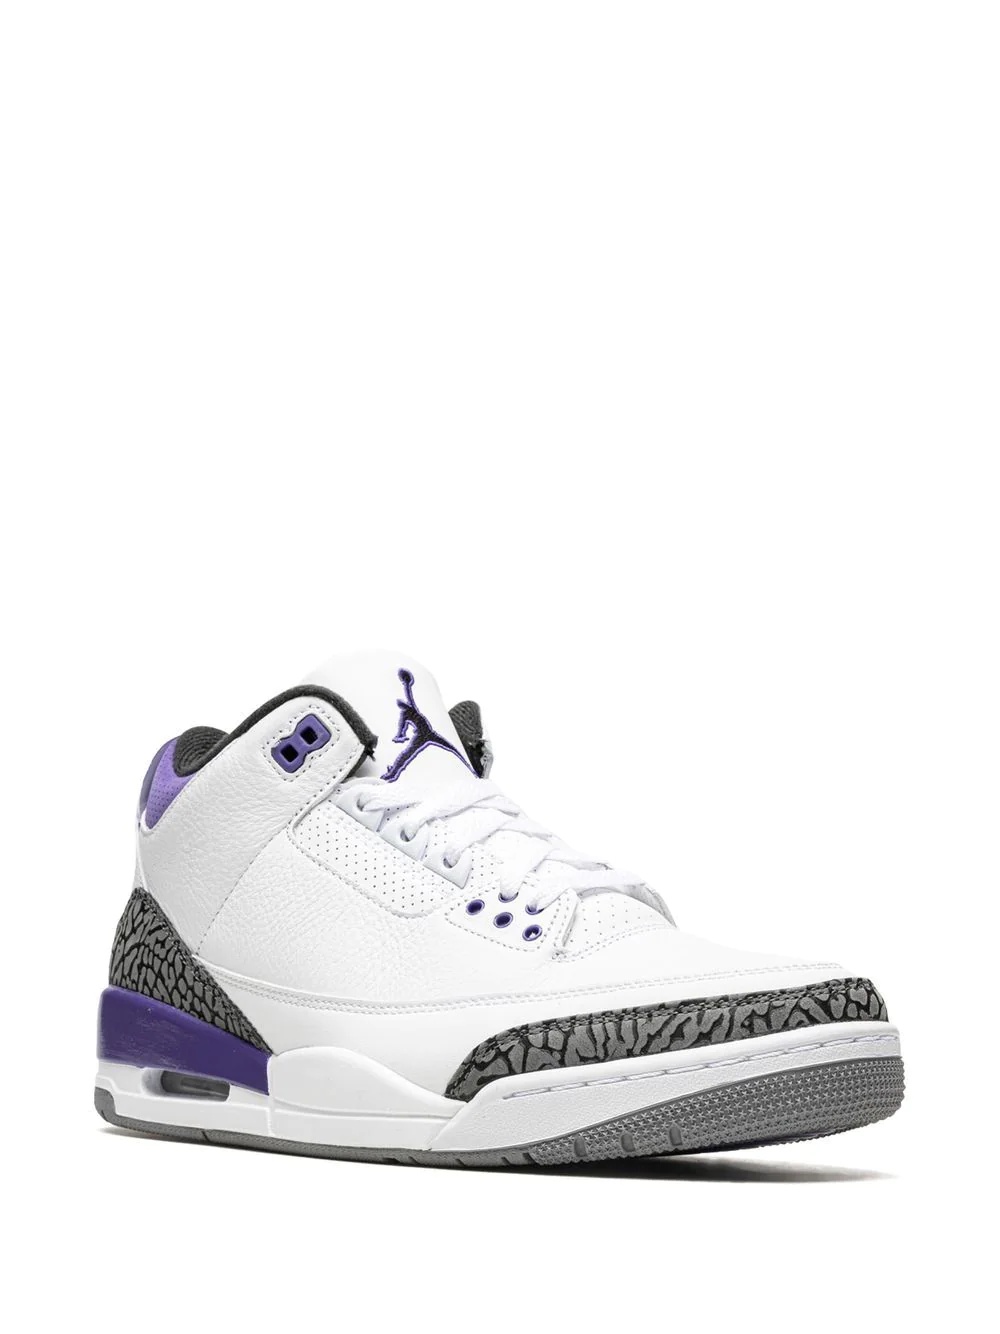 Air Jordan 3 "Dark Iris" sneakers - 2